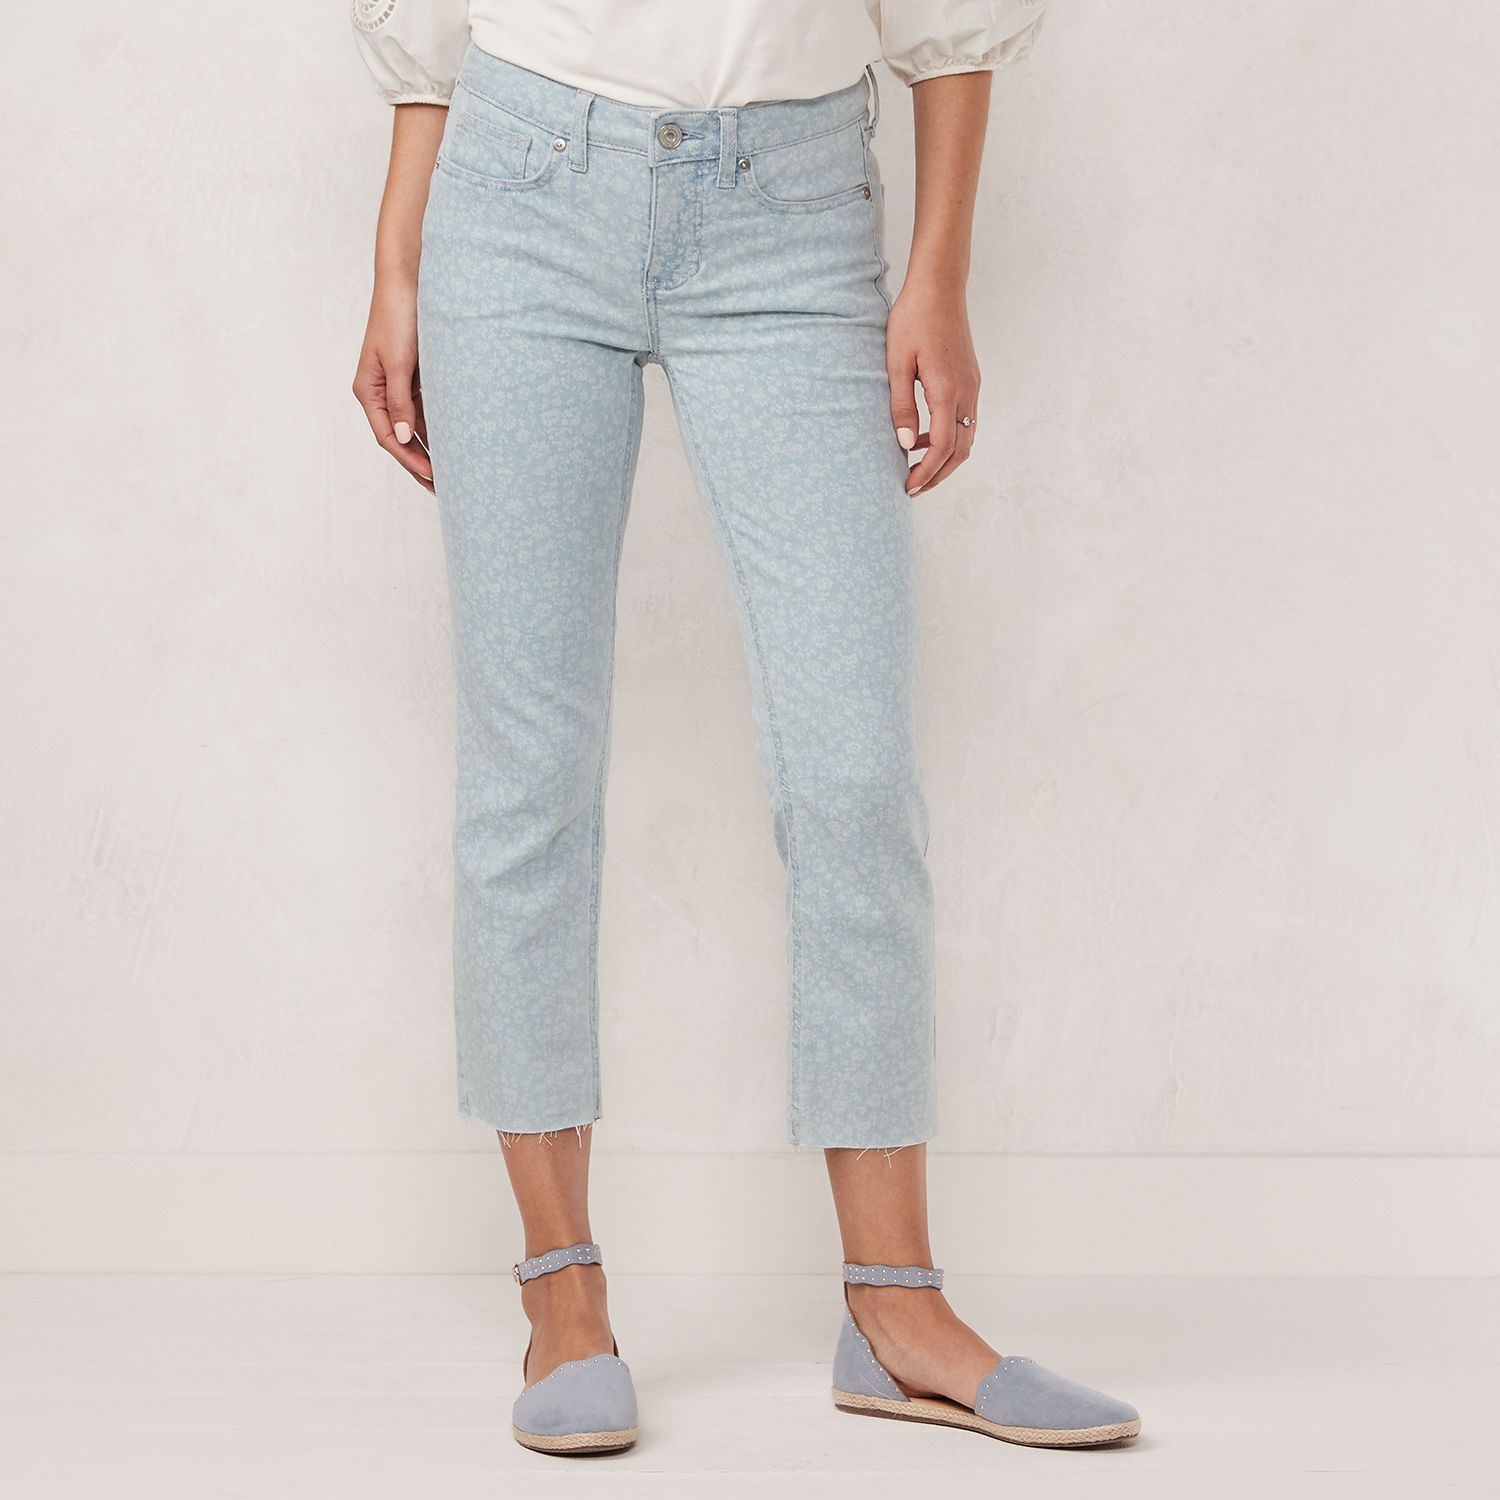 lauren conrad skinny capri jeans